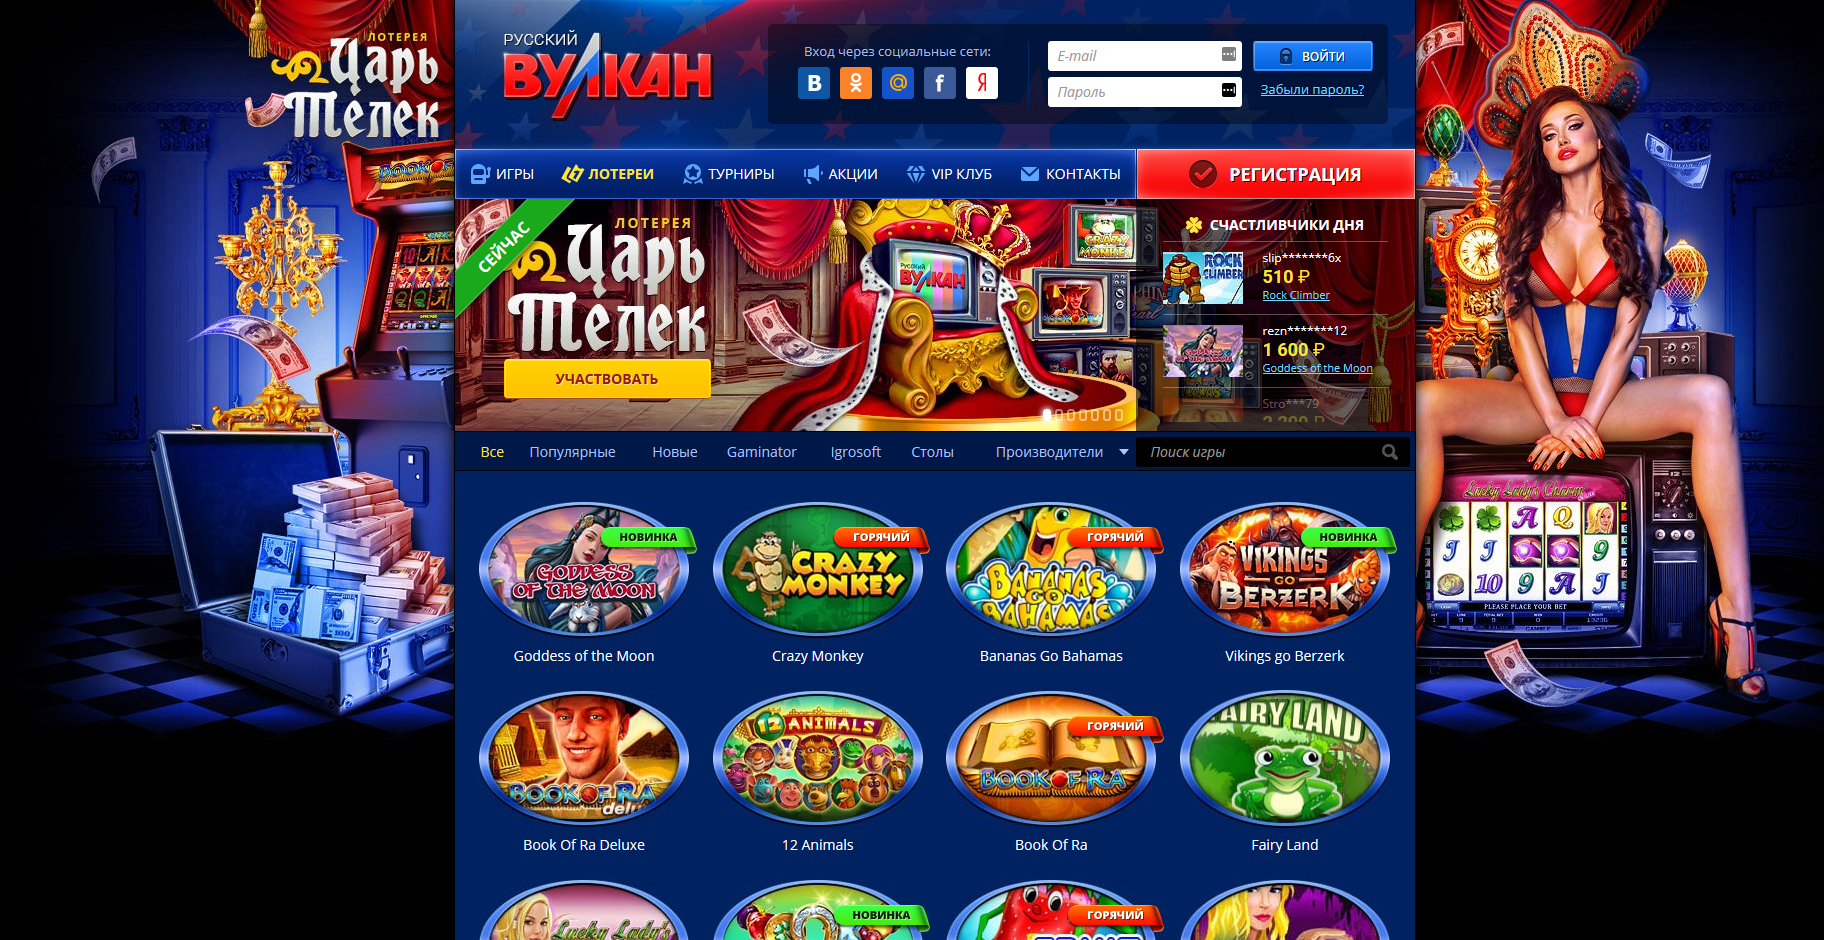 игровые автоматы онлайн на деньги украина гривны